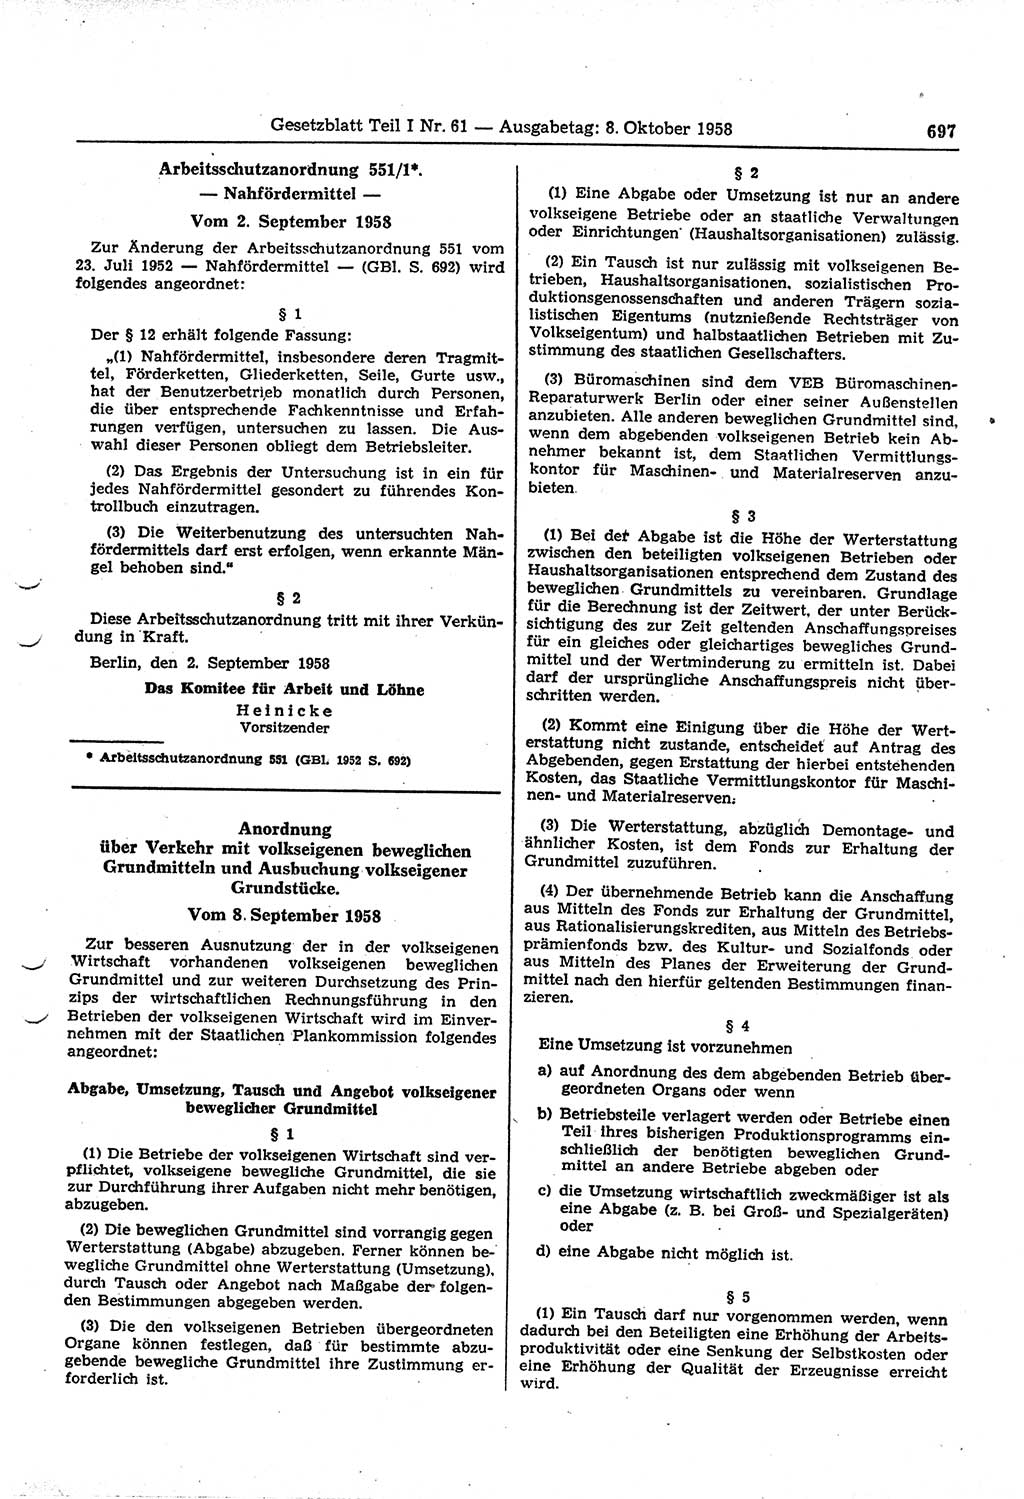 Gesetzblatt (GBl.) der Deutschen Demokratischen Republik (DDR) Teil Ⅰ 1958, Seite 697 (GBl. DDR Ⅰ 1958, S. 697)